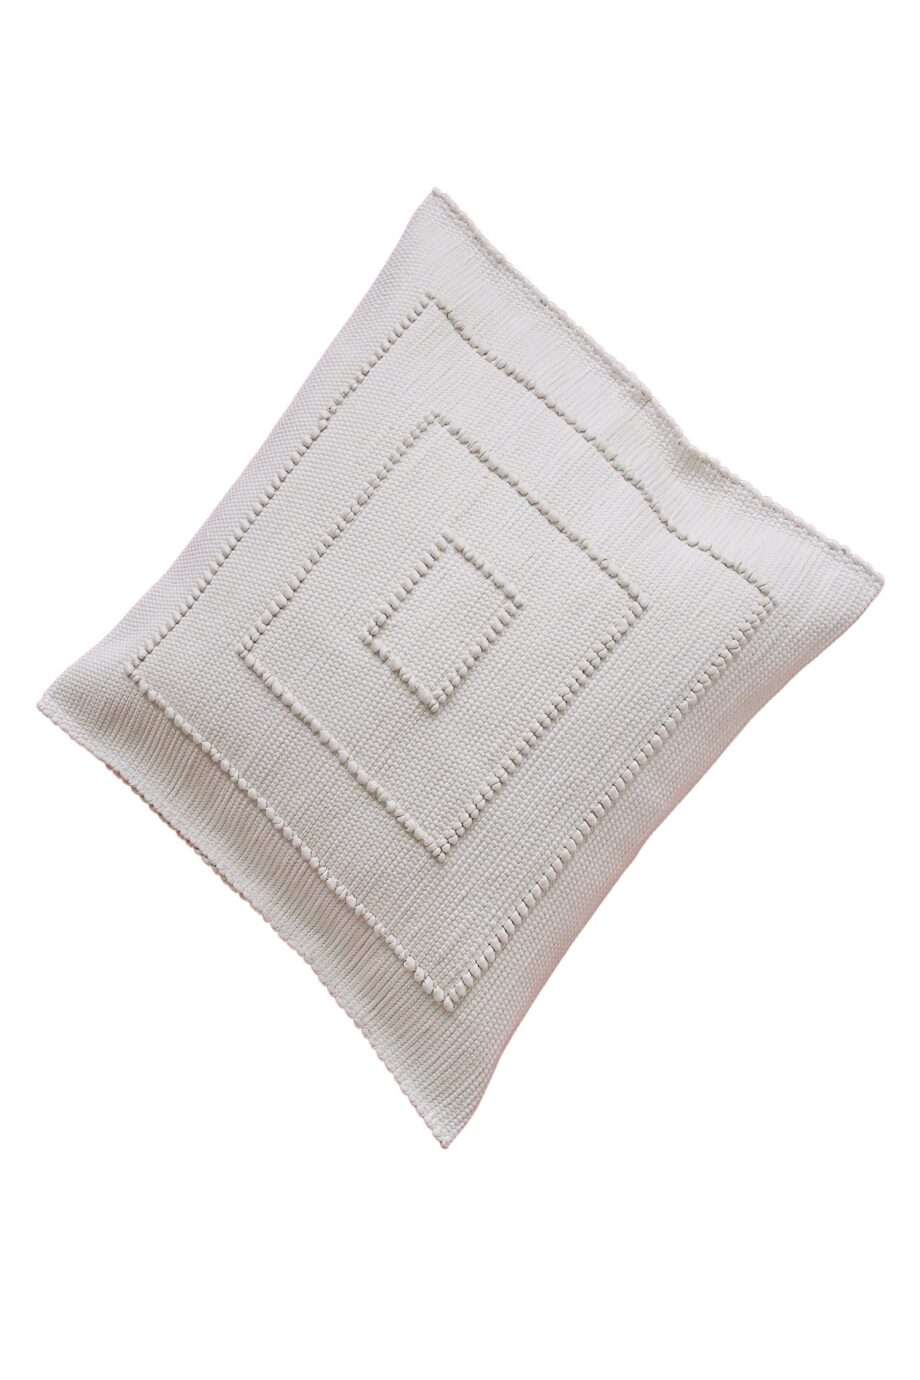 quadro linen woven cotton pillowcase medium_front